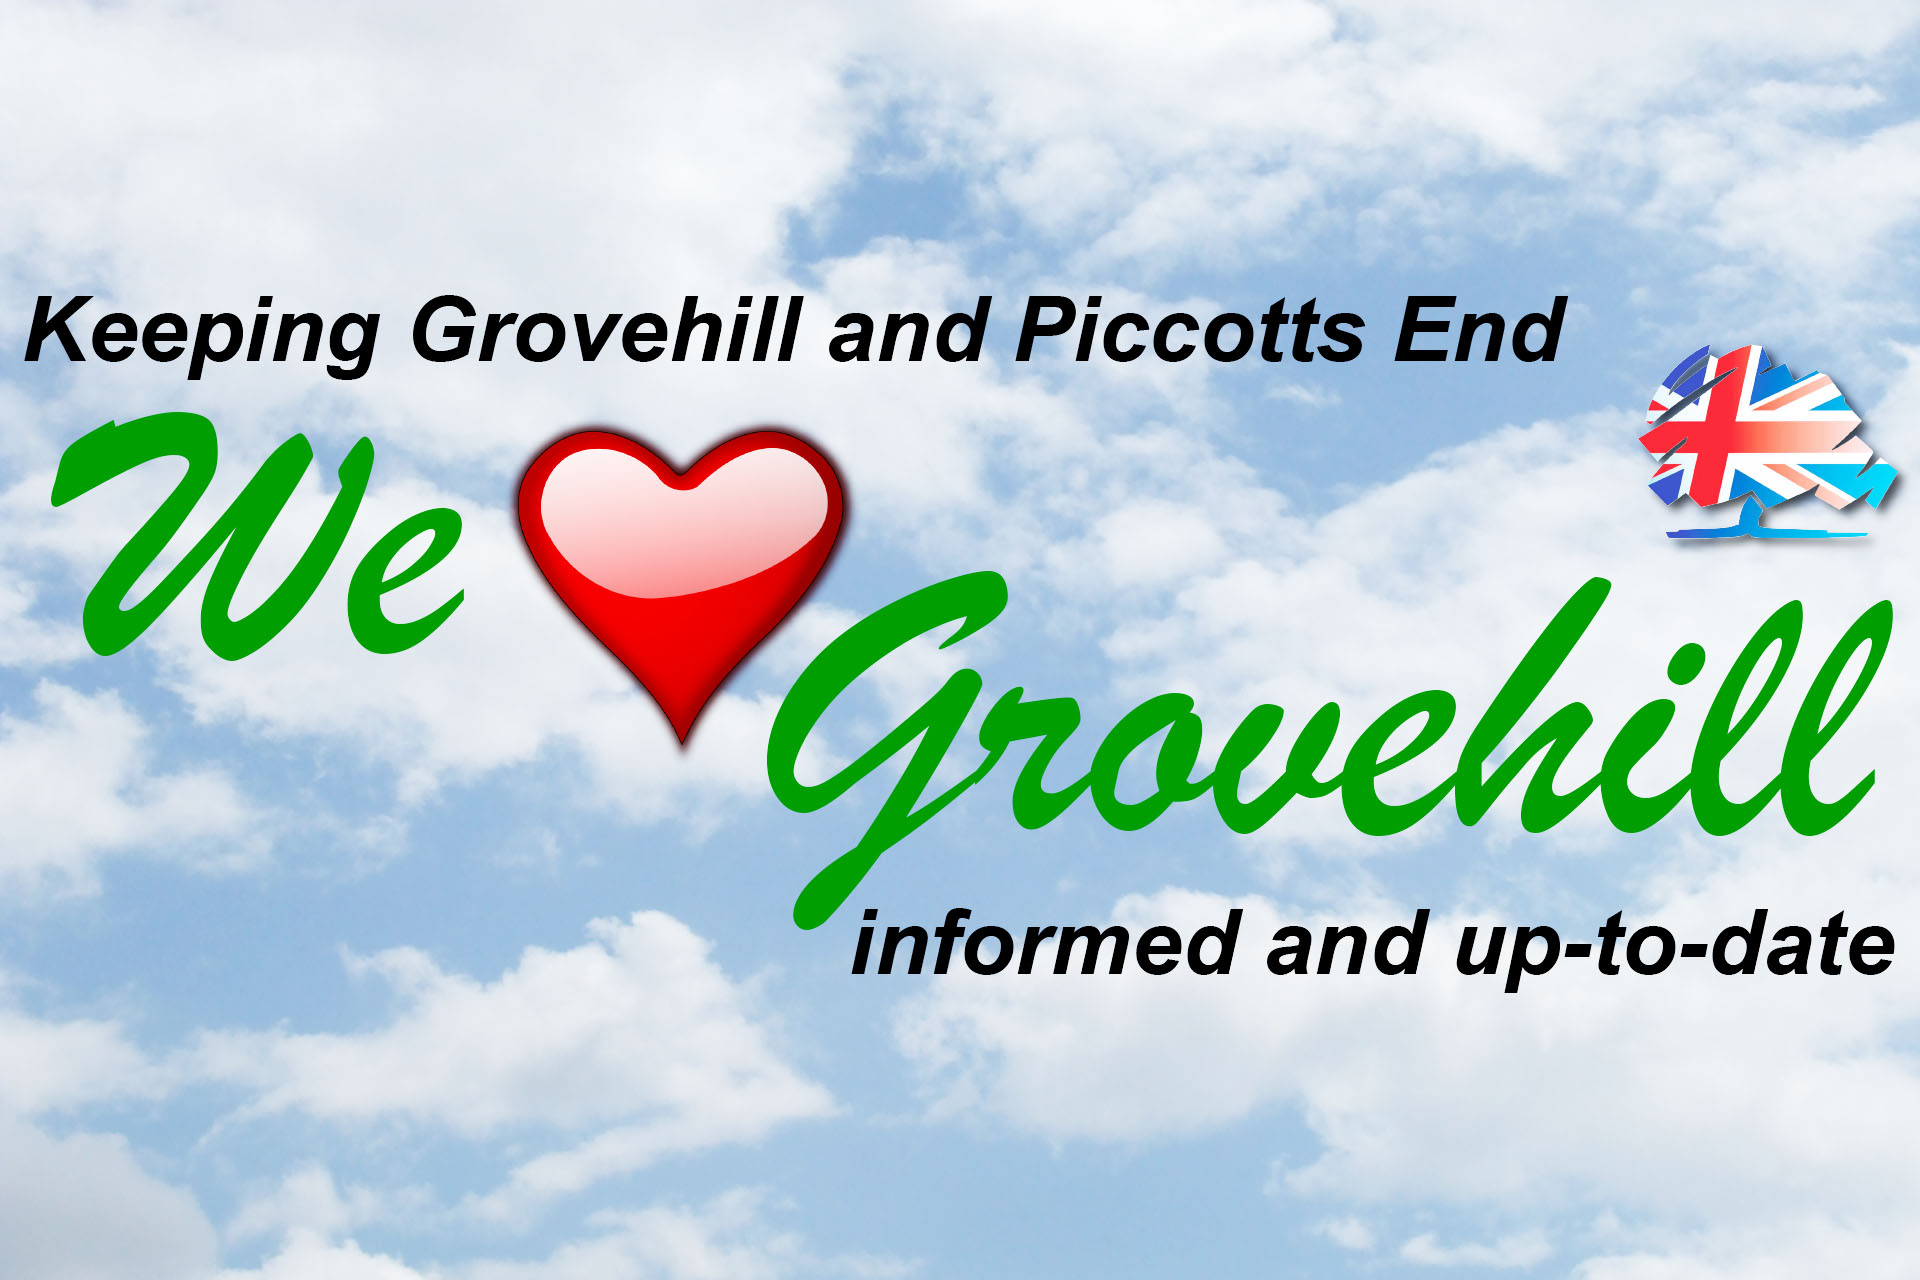 Grovehill Councillors Facebook group launches today